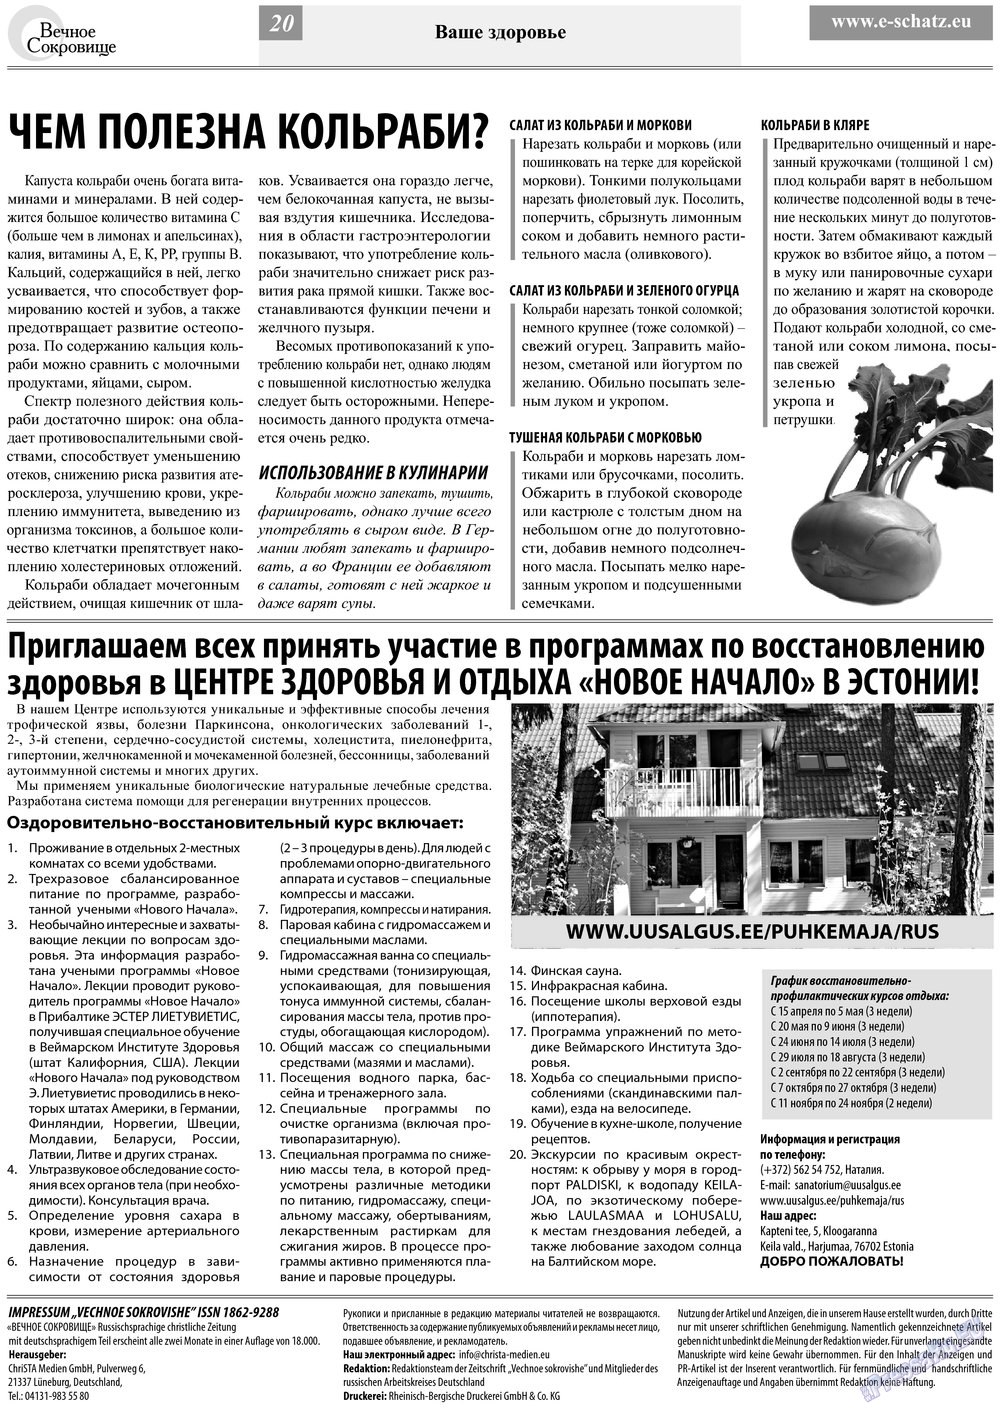 Вечное сокровище, газета. 2013 №2 стр.20